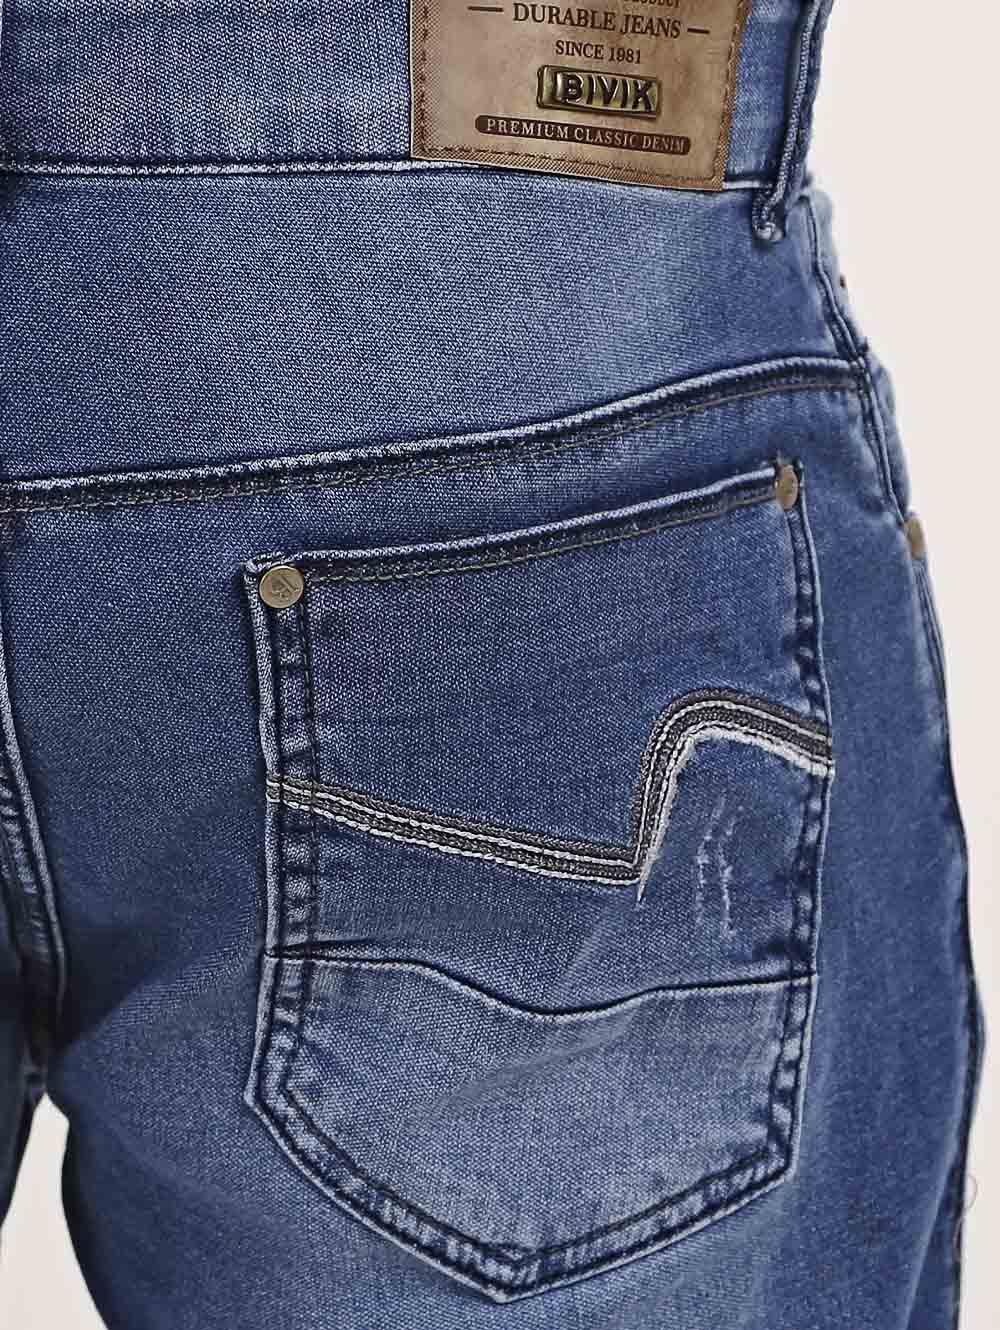 marca de calca jeans